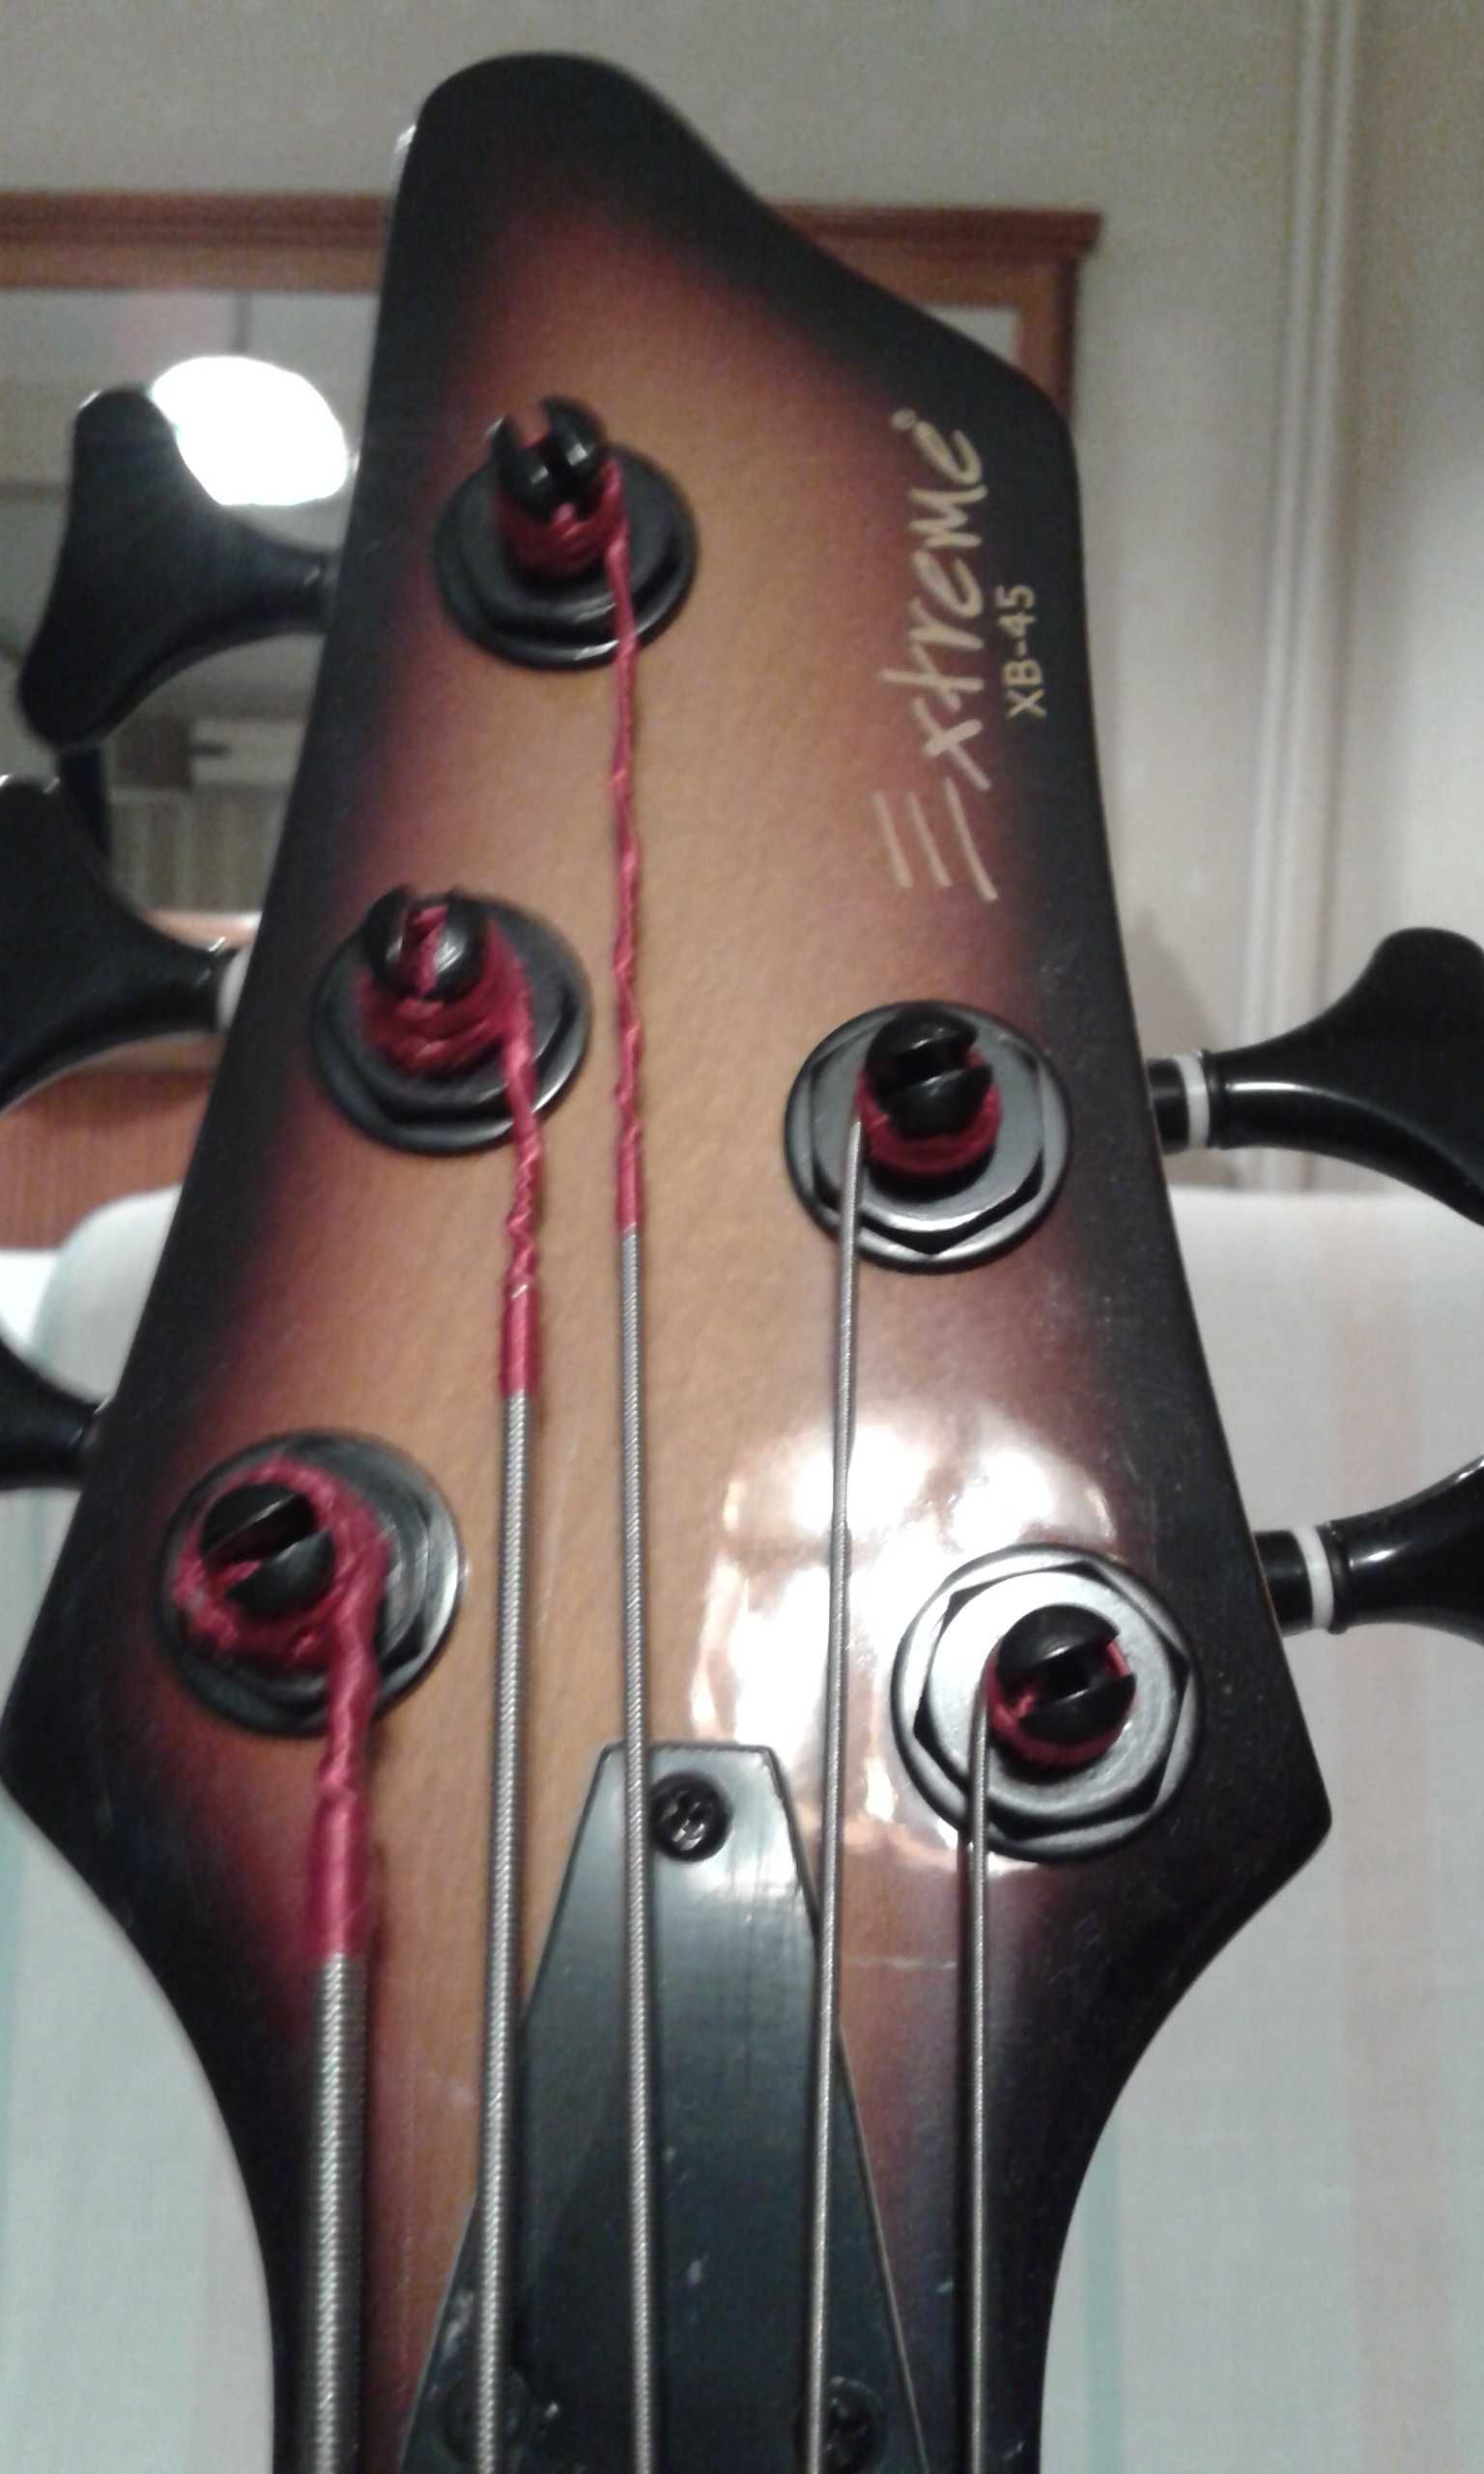 Електрическа бас китара, пет струнна,марка: EXTREME, модел: XB-45